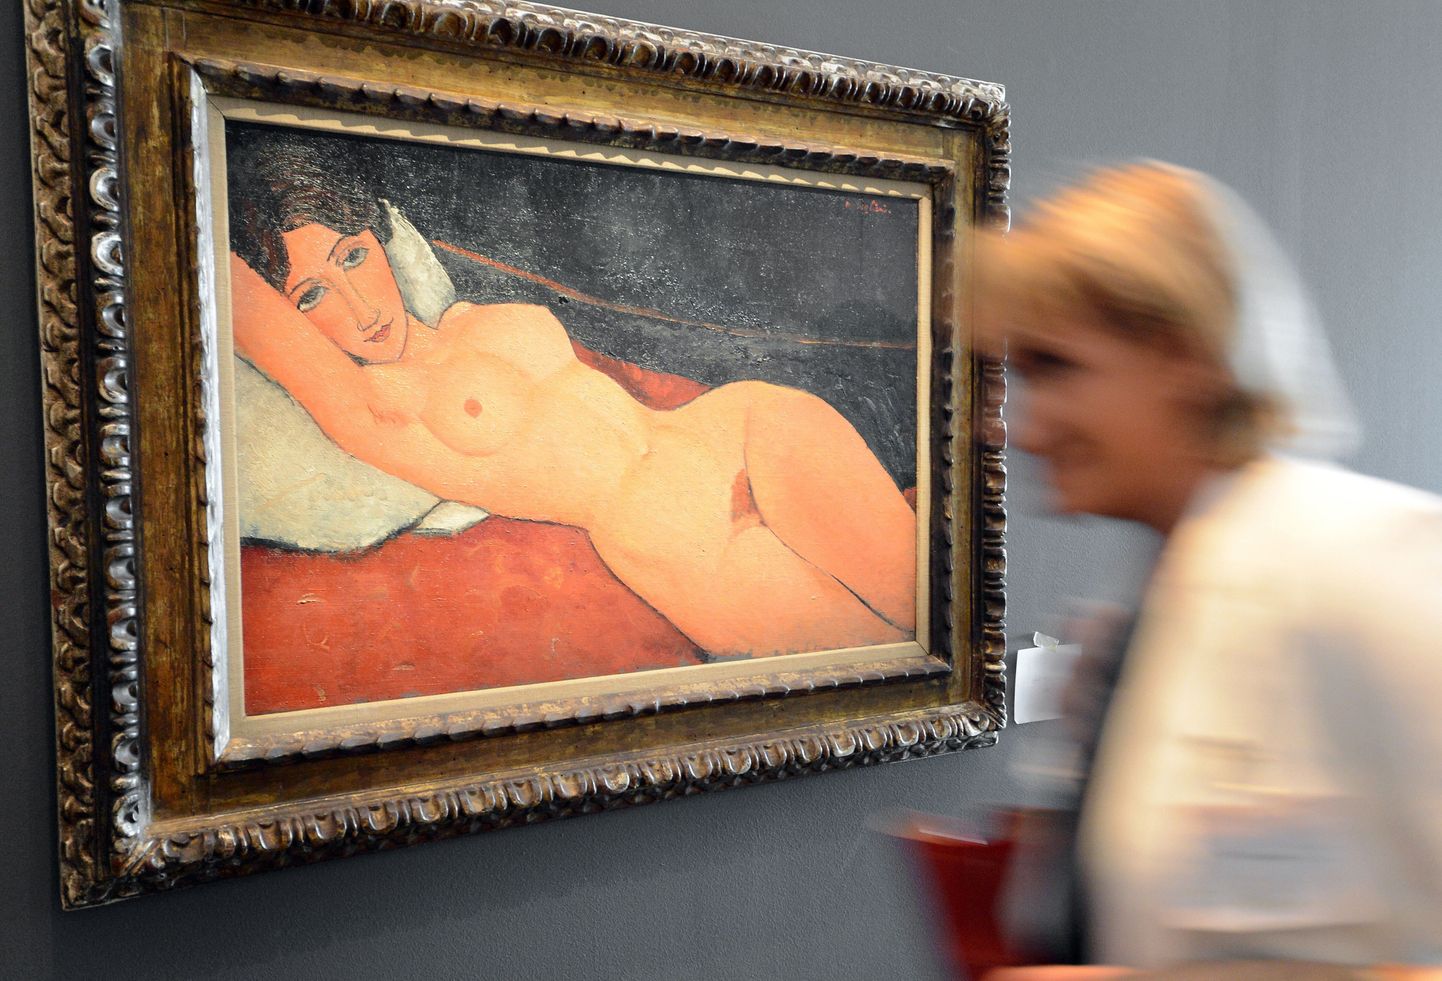 Fotol on Prantsusmaal Metzis näitusel "1917" välja pandud Modigliani maal, mis kujutab kunstniku nägemust naiseliust.